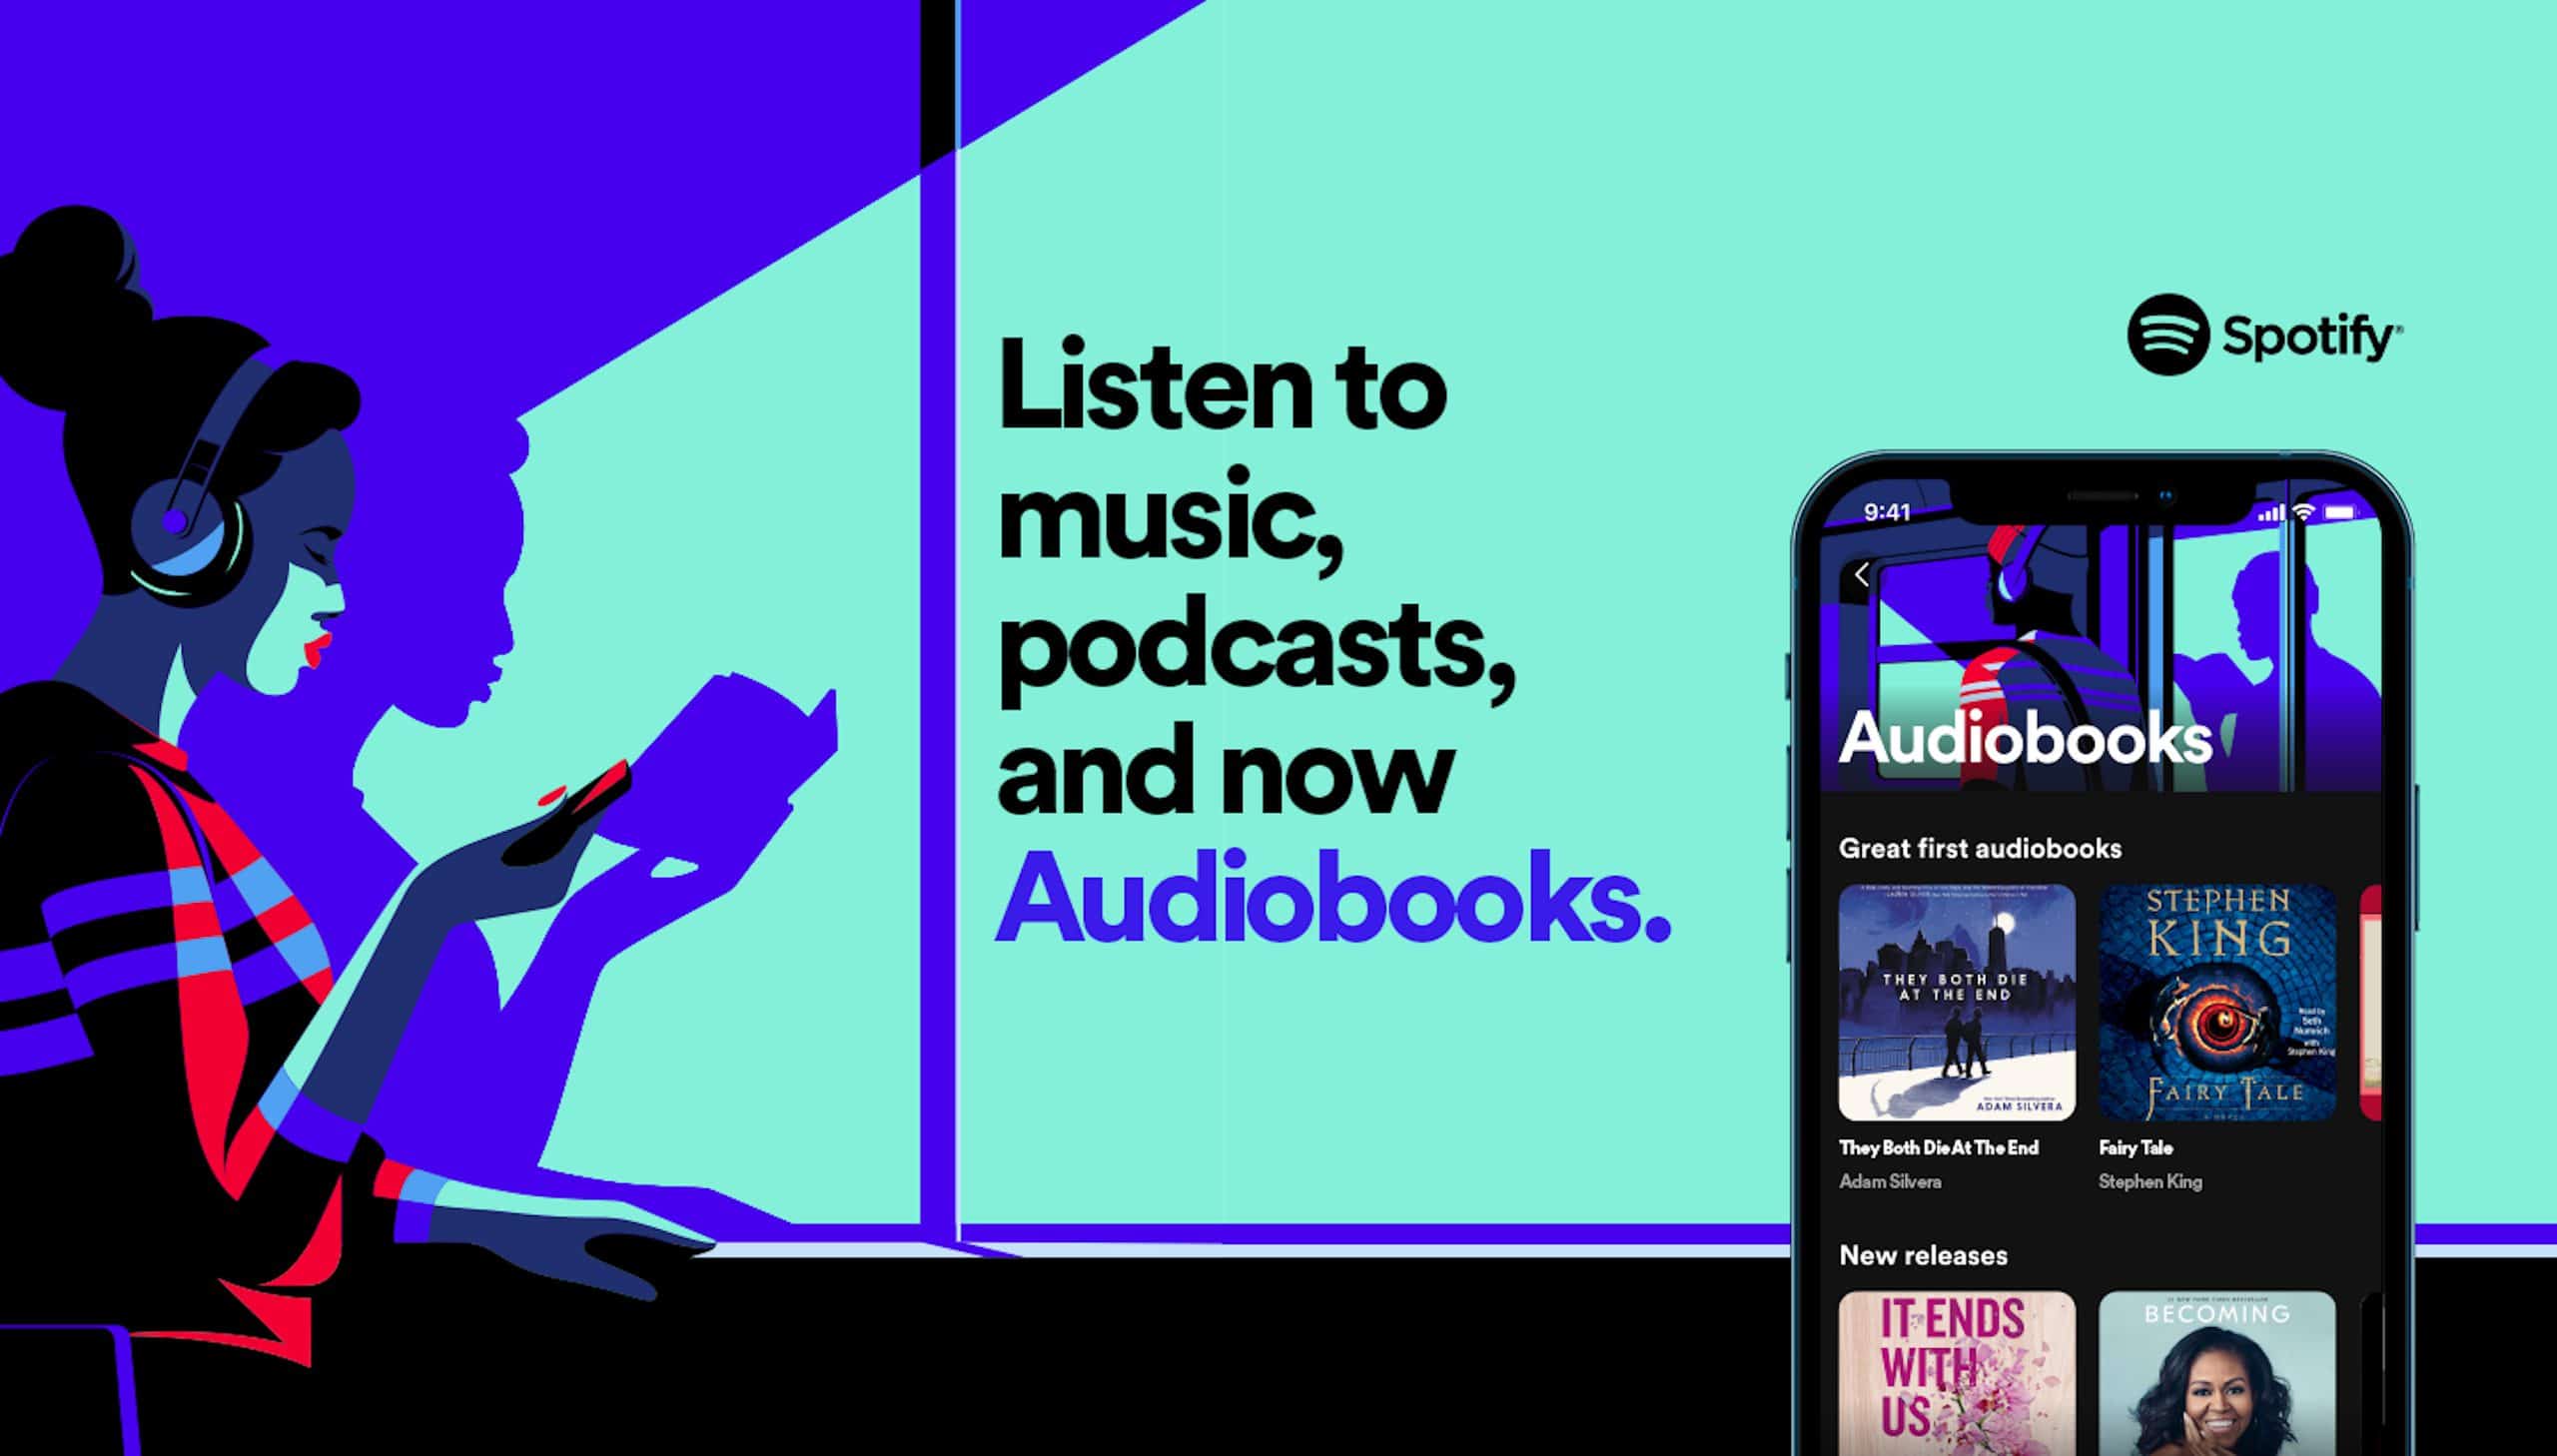 Facebook lanza nuevo reproductor para escuchar música de Spotify